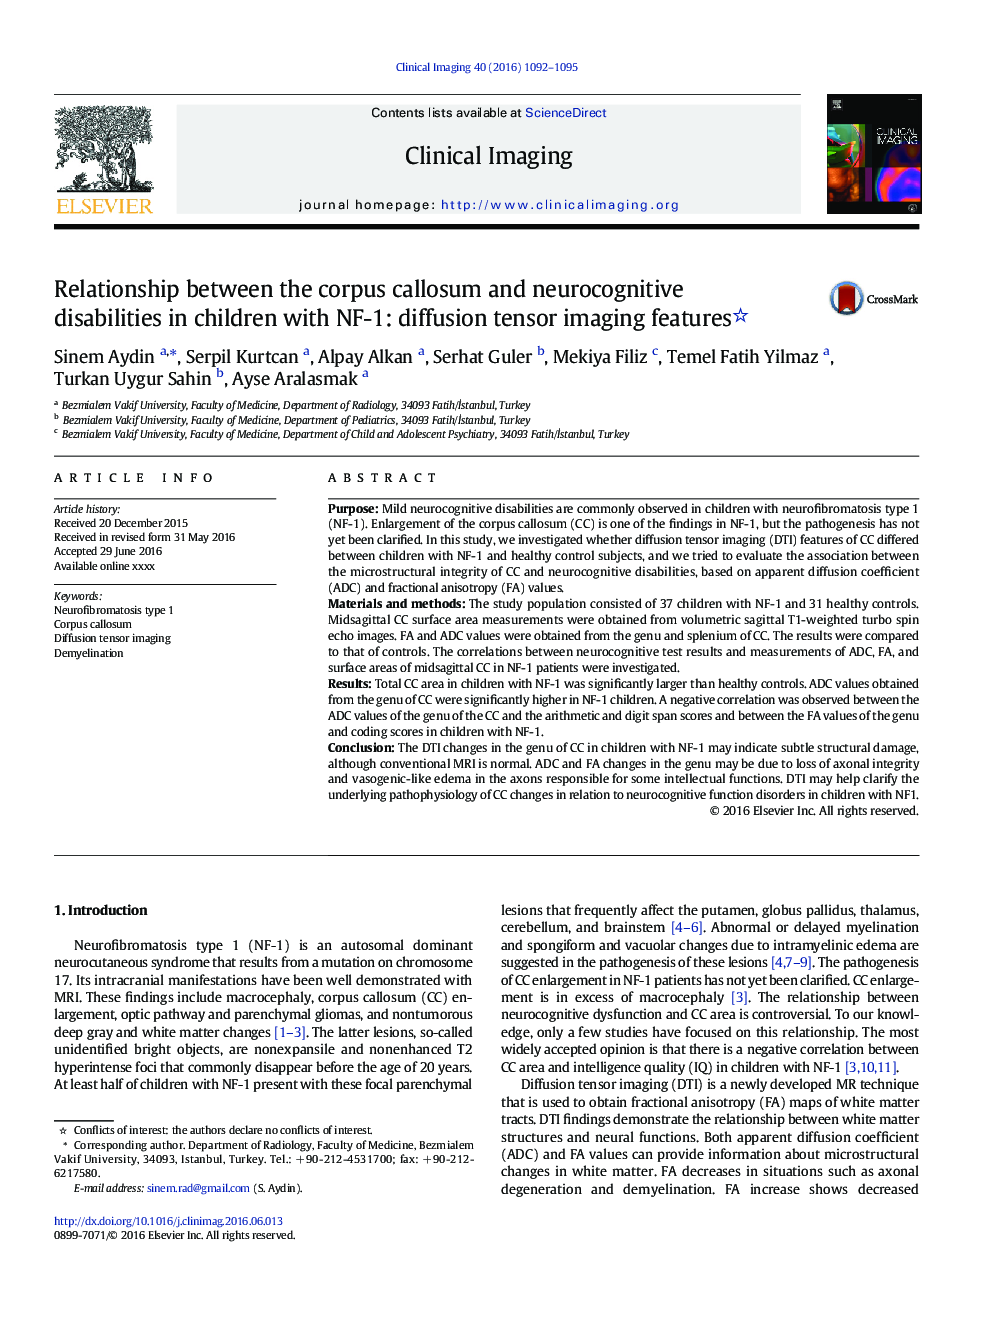 ارتباط بین کولوزوم جسم و ناتوانی های عصبی در کودکان مبتلا به NF-1: ویژگی های تصویربرداری تانسور انتشار